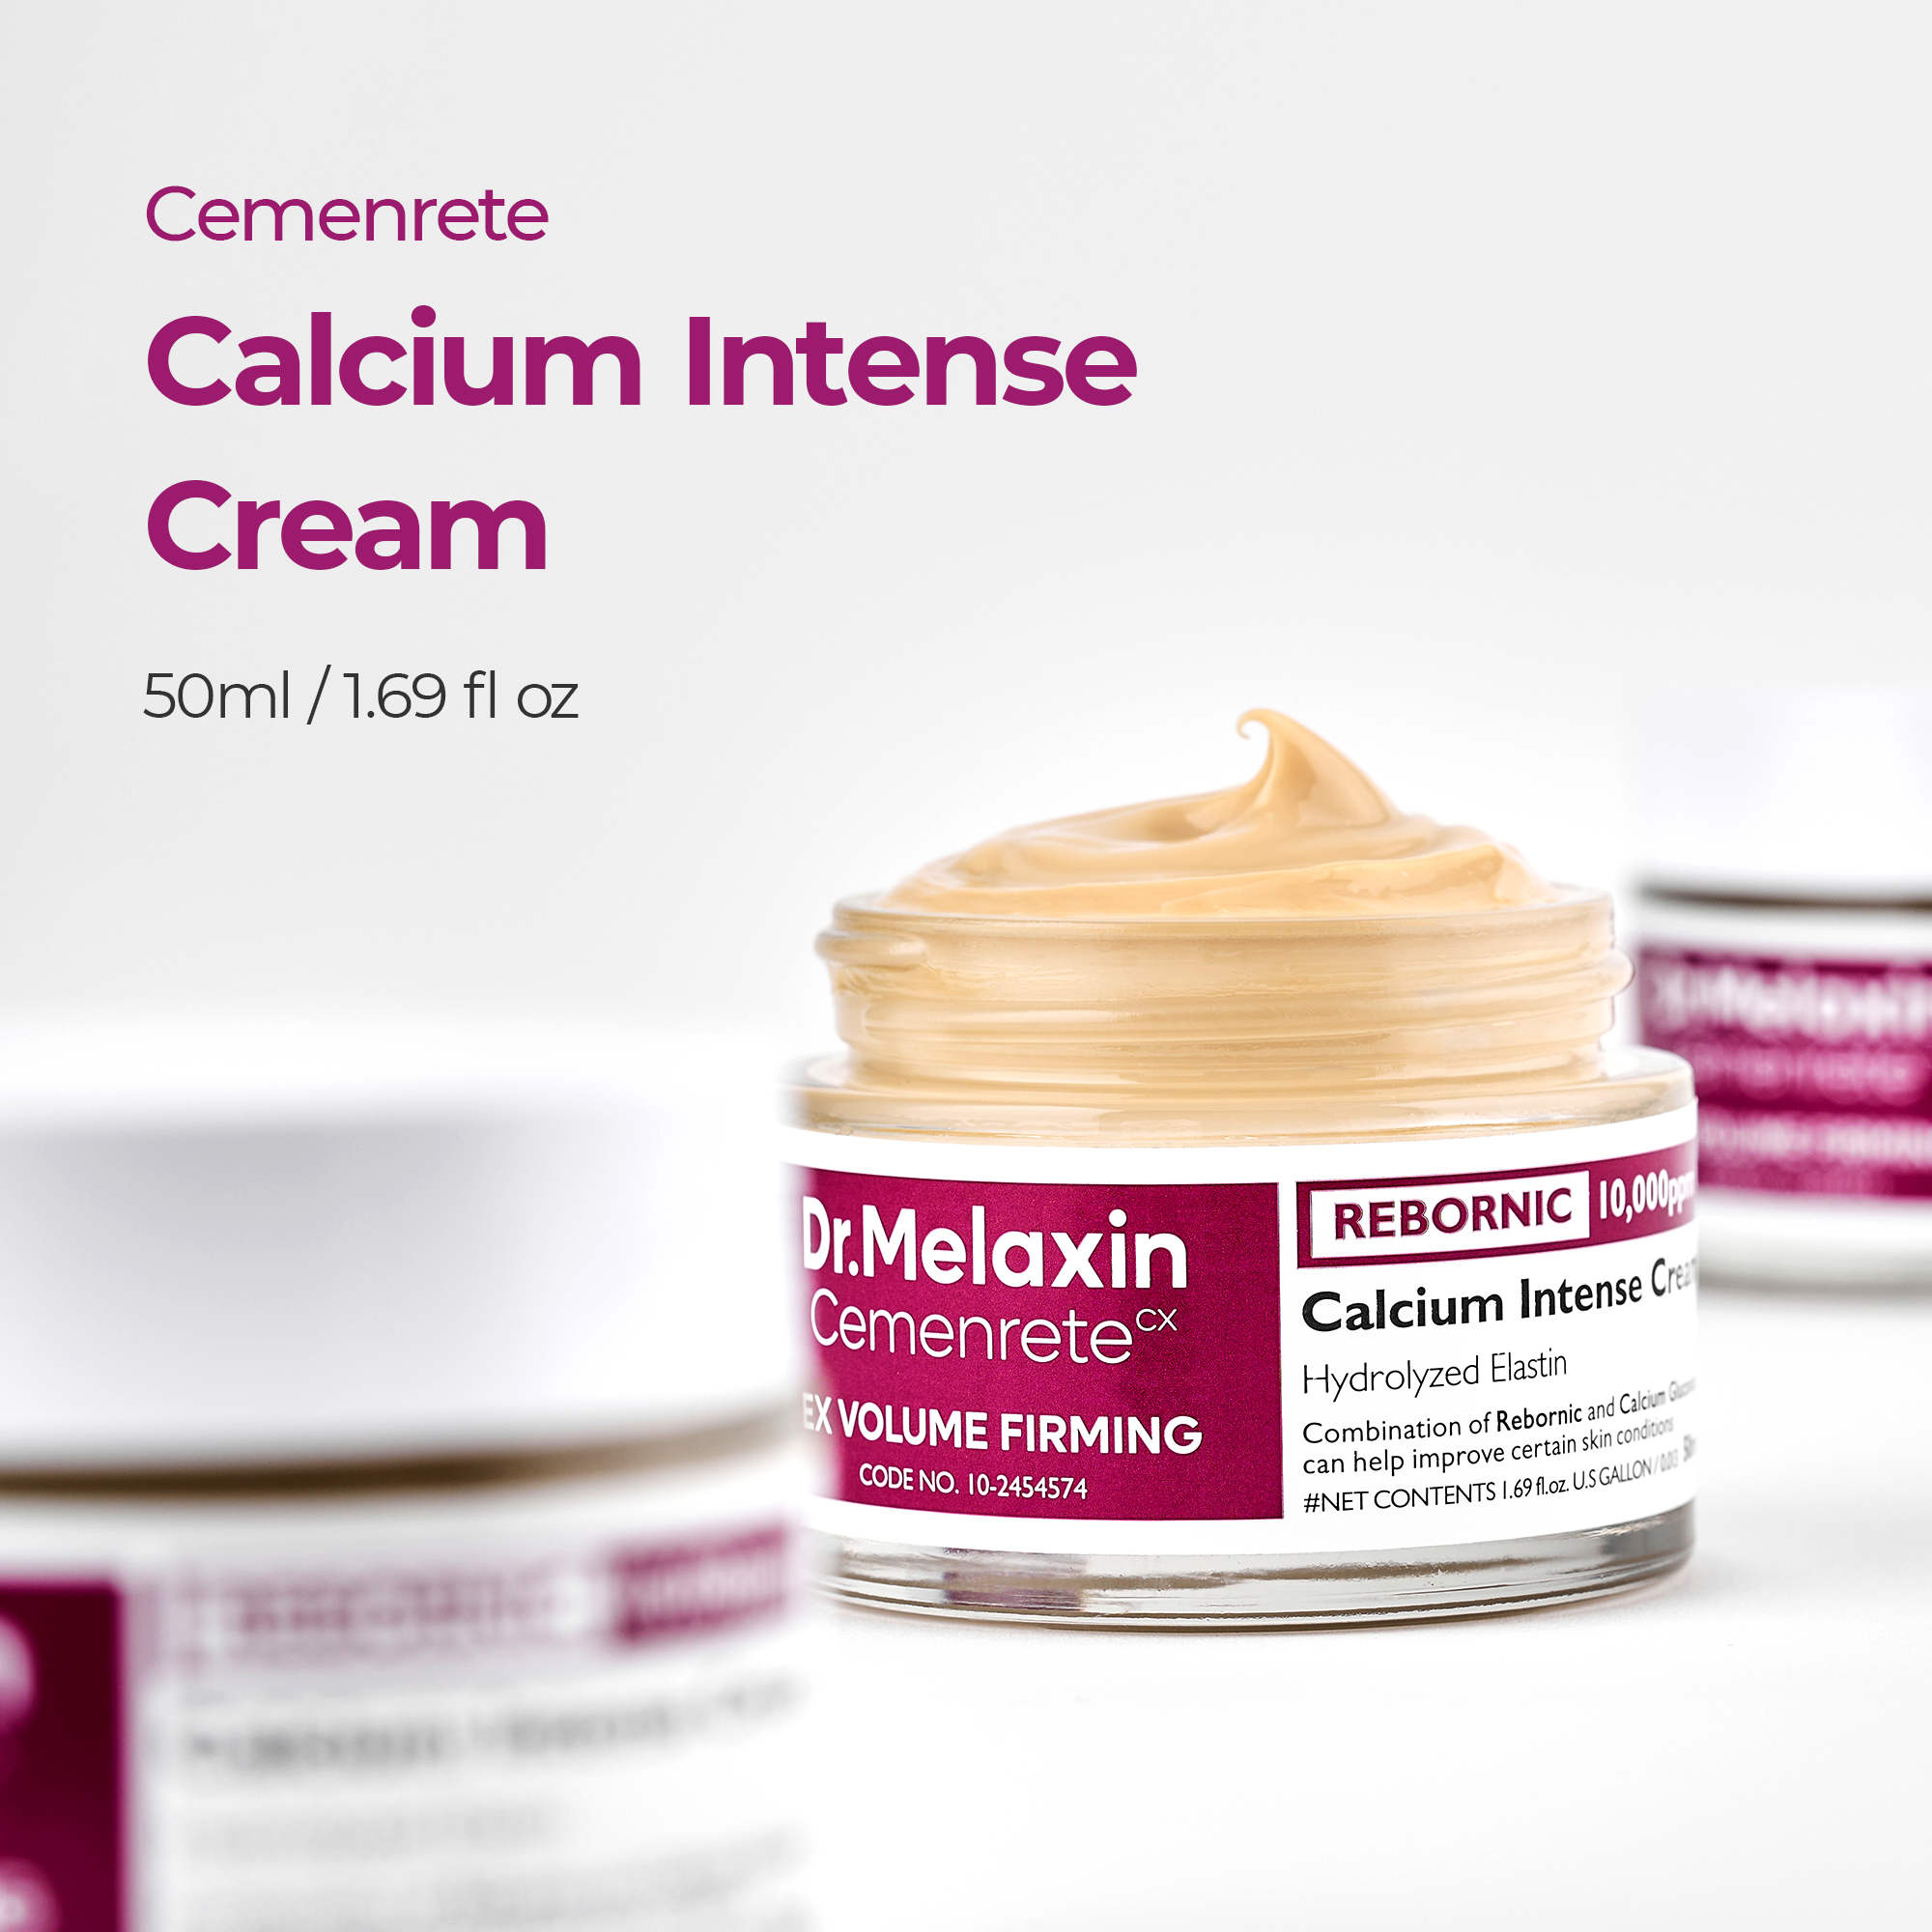 [Dr.Melaxin] Cemenrete Calcium Intense Cream 50ml